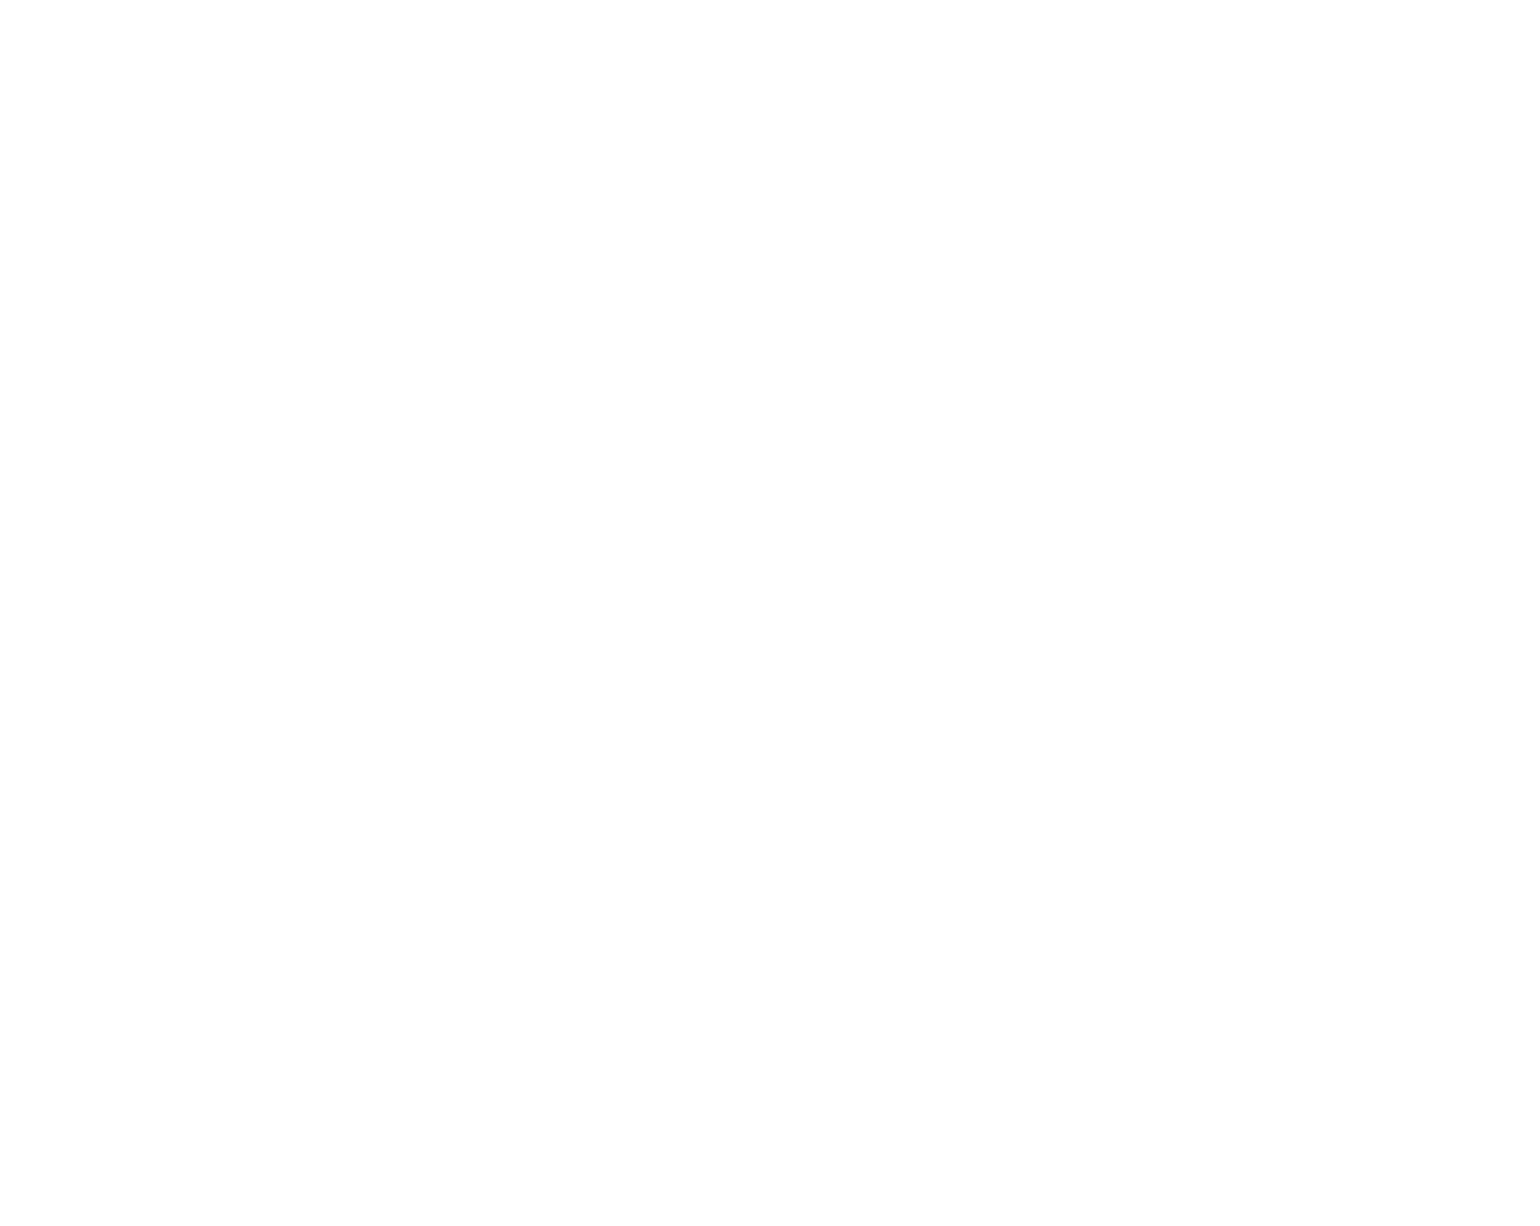 NordVPN logo for dark backgrounds (transparent PNG)